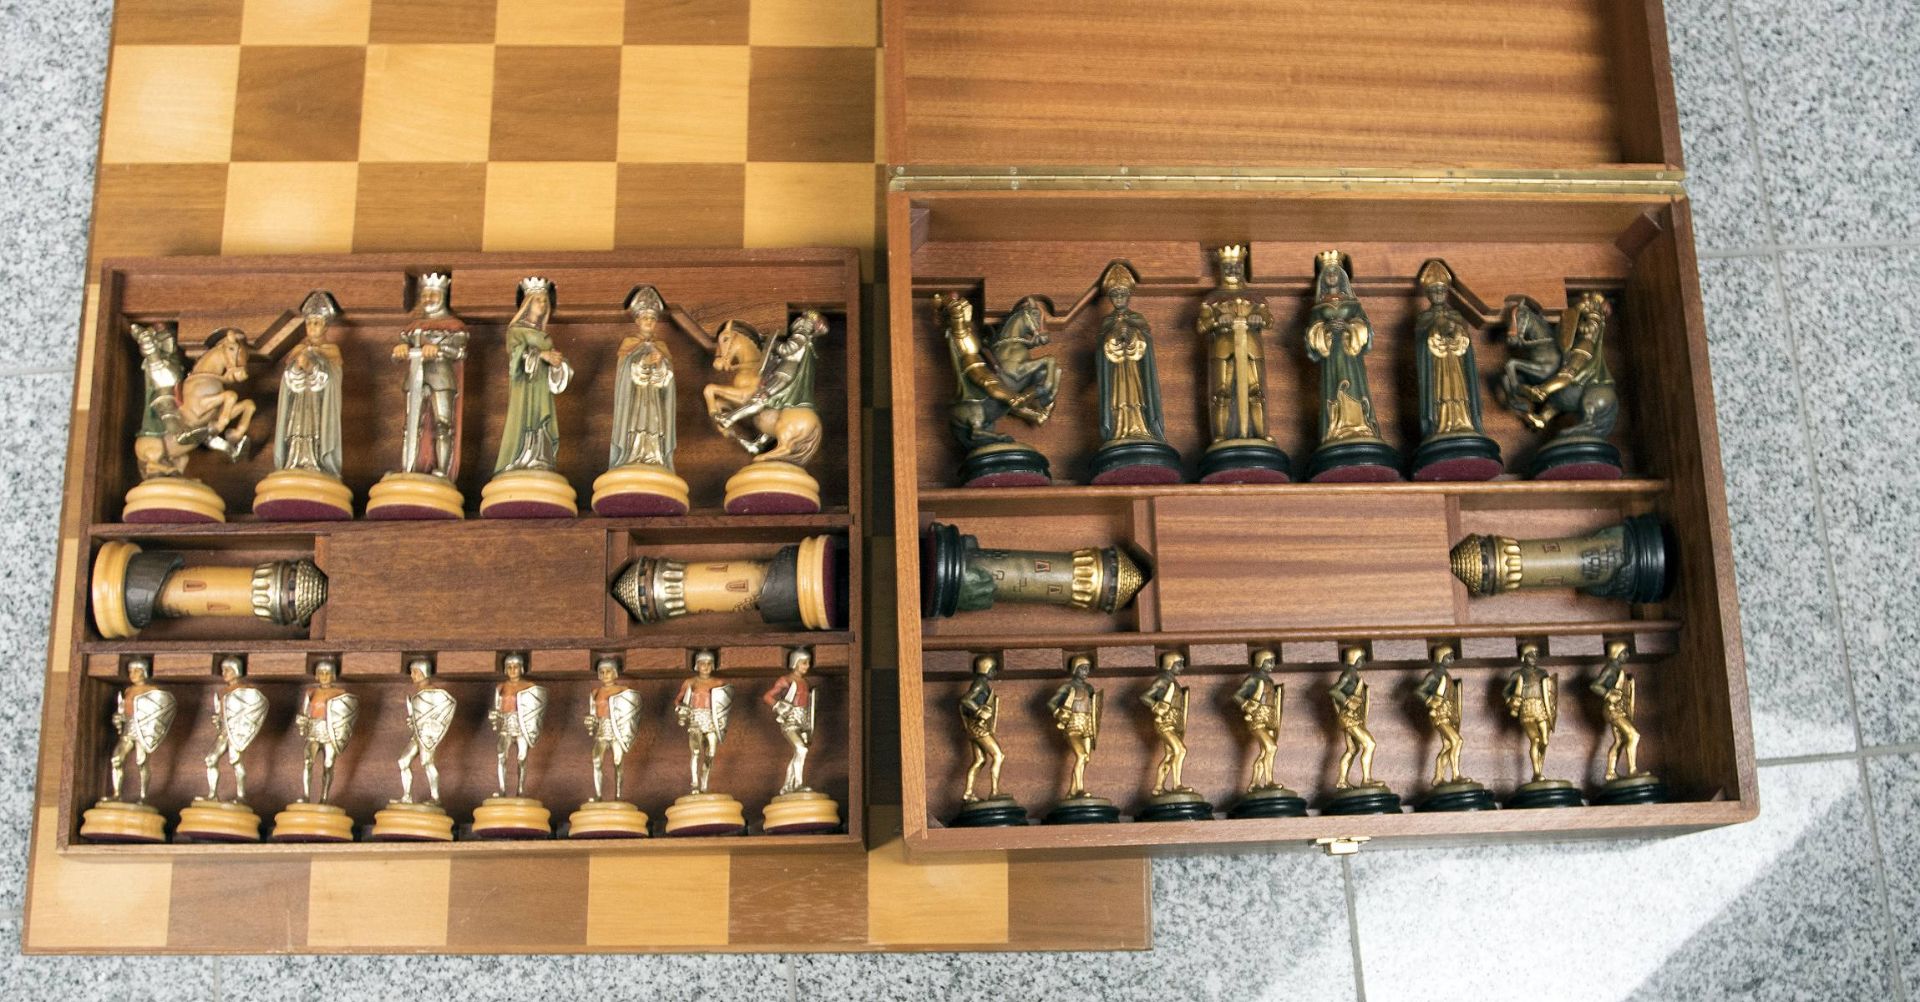 Alois Obermayer: Schachspiel mit Figuren in mittelalterlichen Gewändern